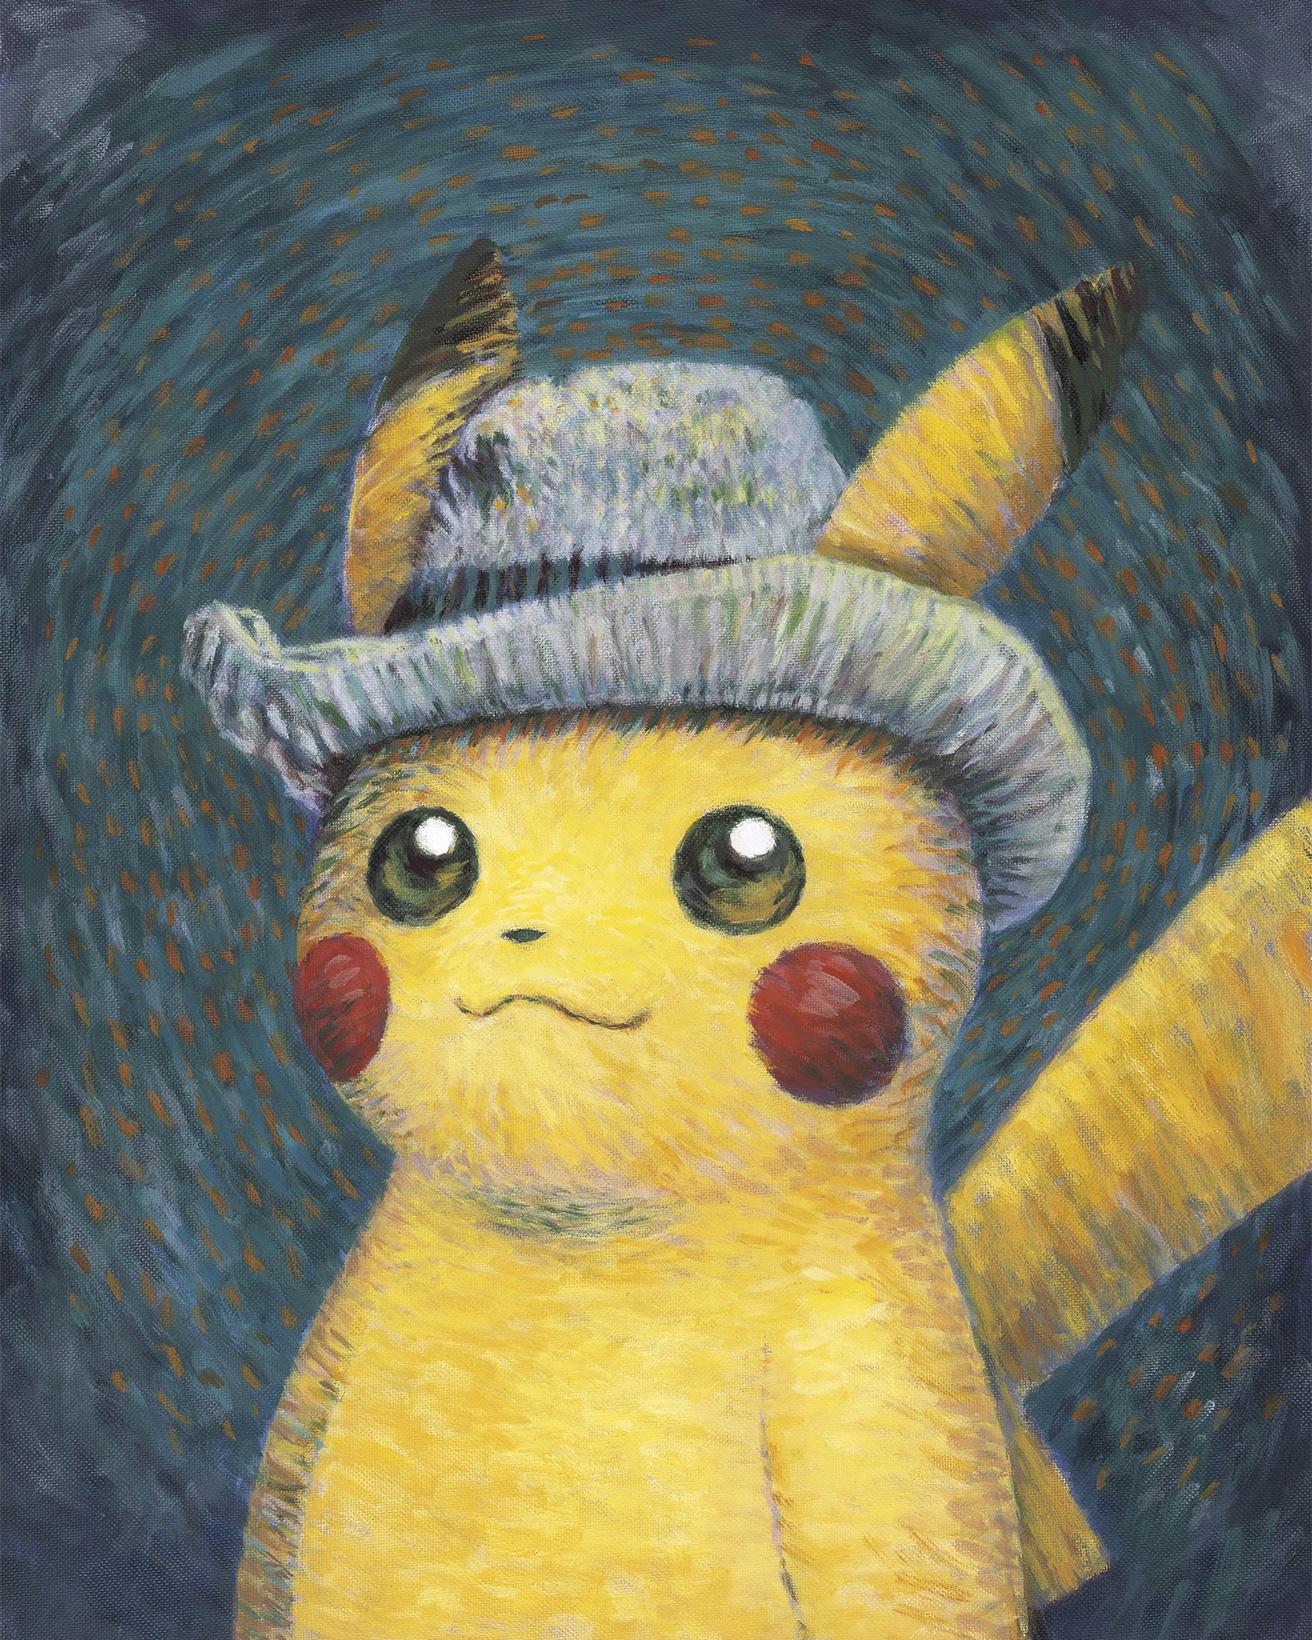 ゴッホの《グレーのフェルト帽をかぶった自画像》を気取ったピカチュウ。Pikachu inspired by Self-Portrait with Grey Felt Hat, 2022, Naoyo Kimura (1960), The Pokémon Company International.